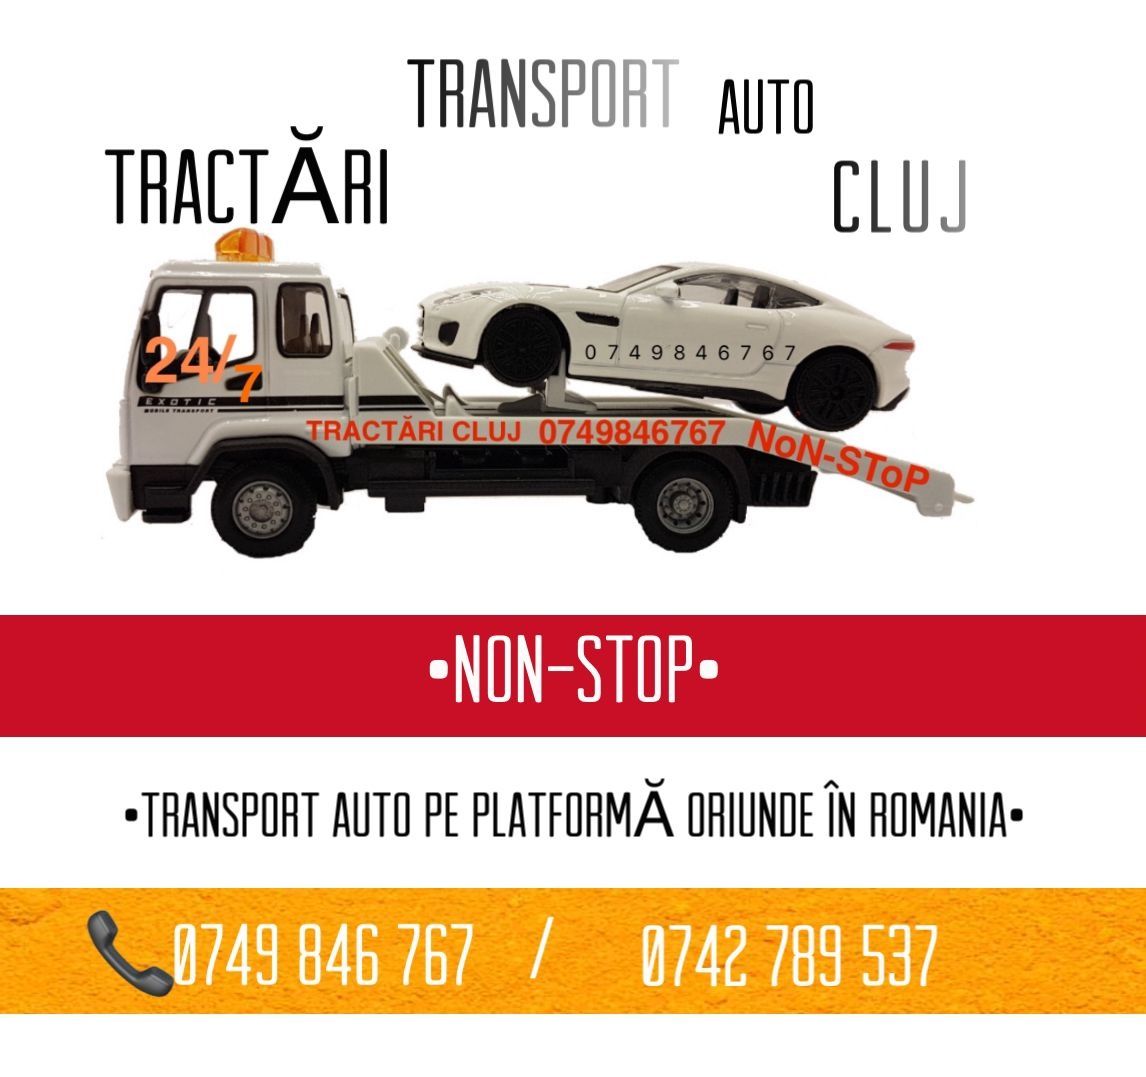 Tractari auto-tractari auto non stop cluj-transport auto